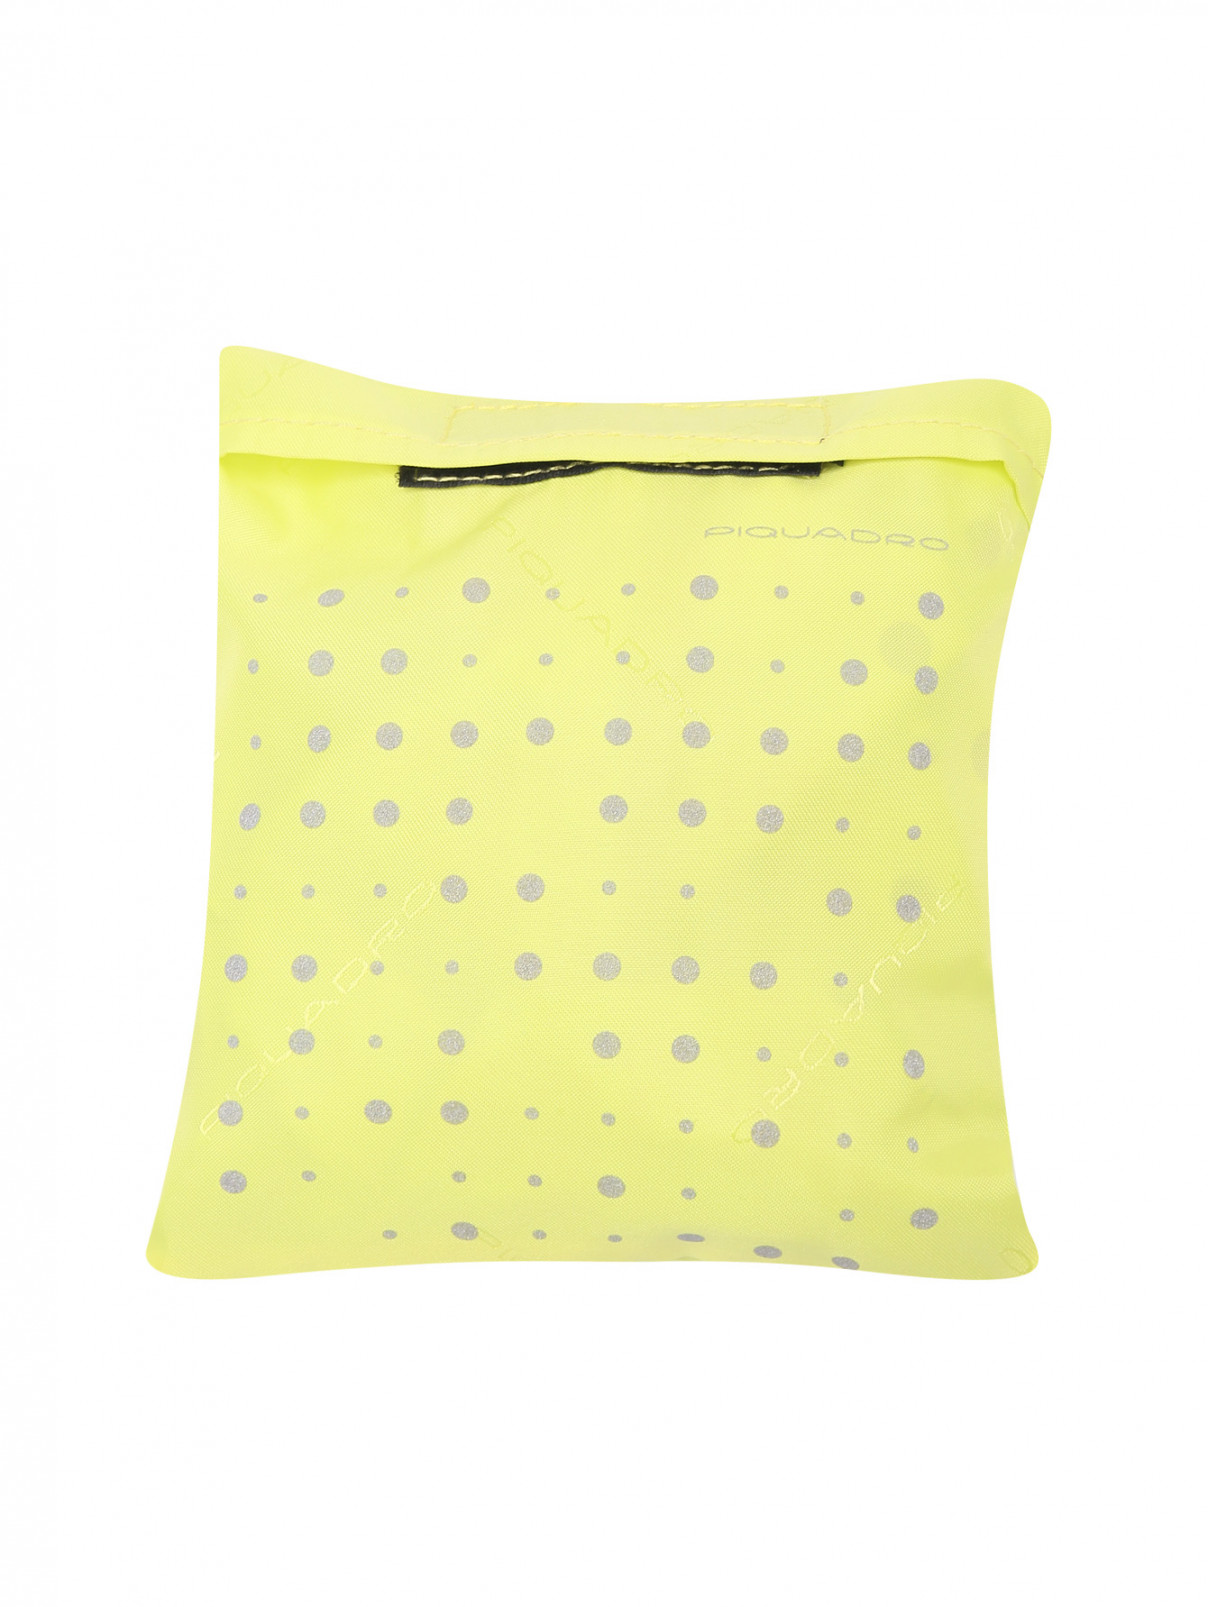 Чехол для рюкзака из текстиля с принтом Piquadro  –  Общий вид  – Цвет:  Зеленый